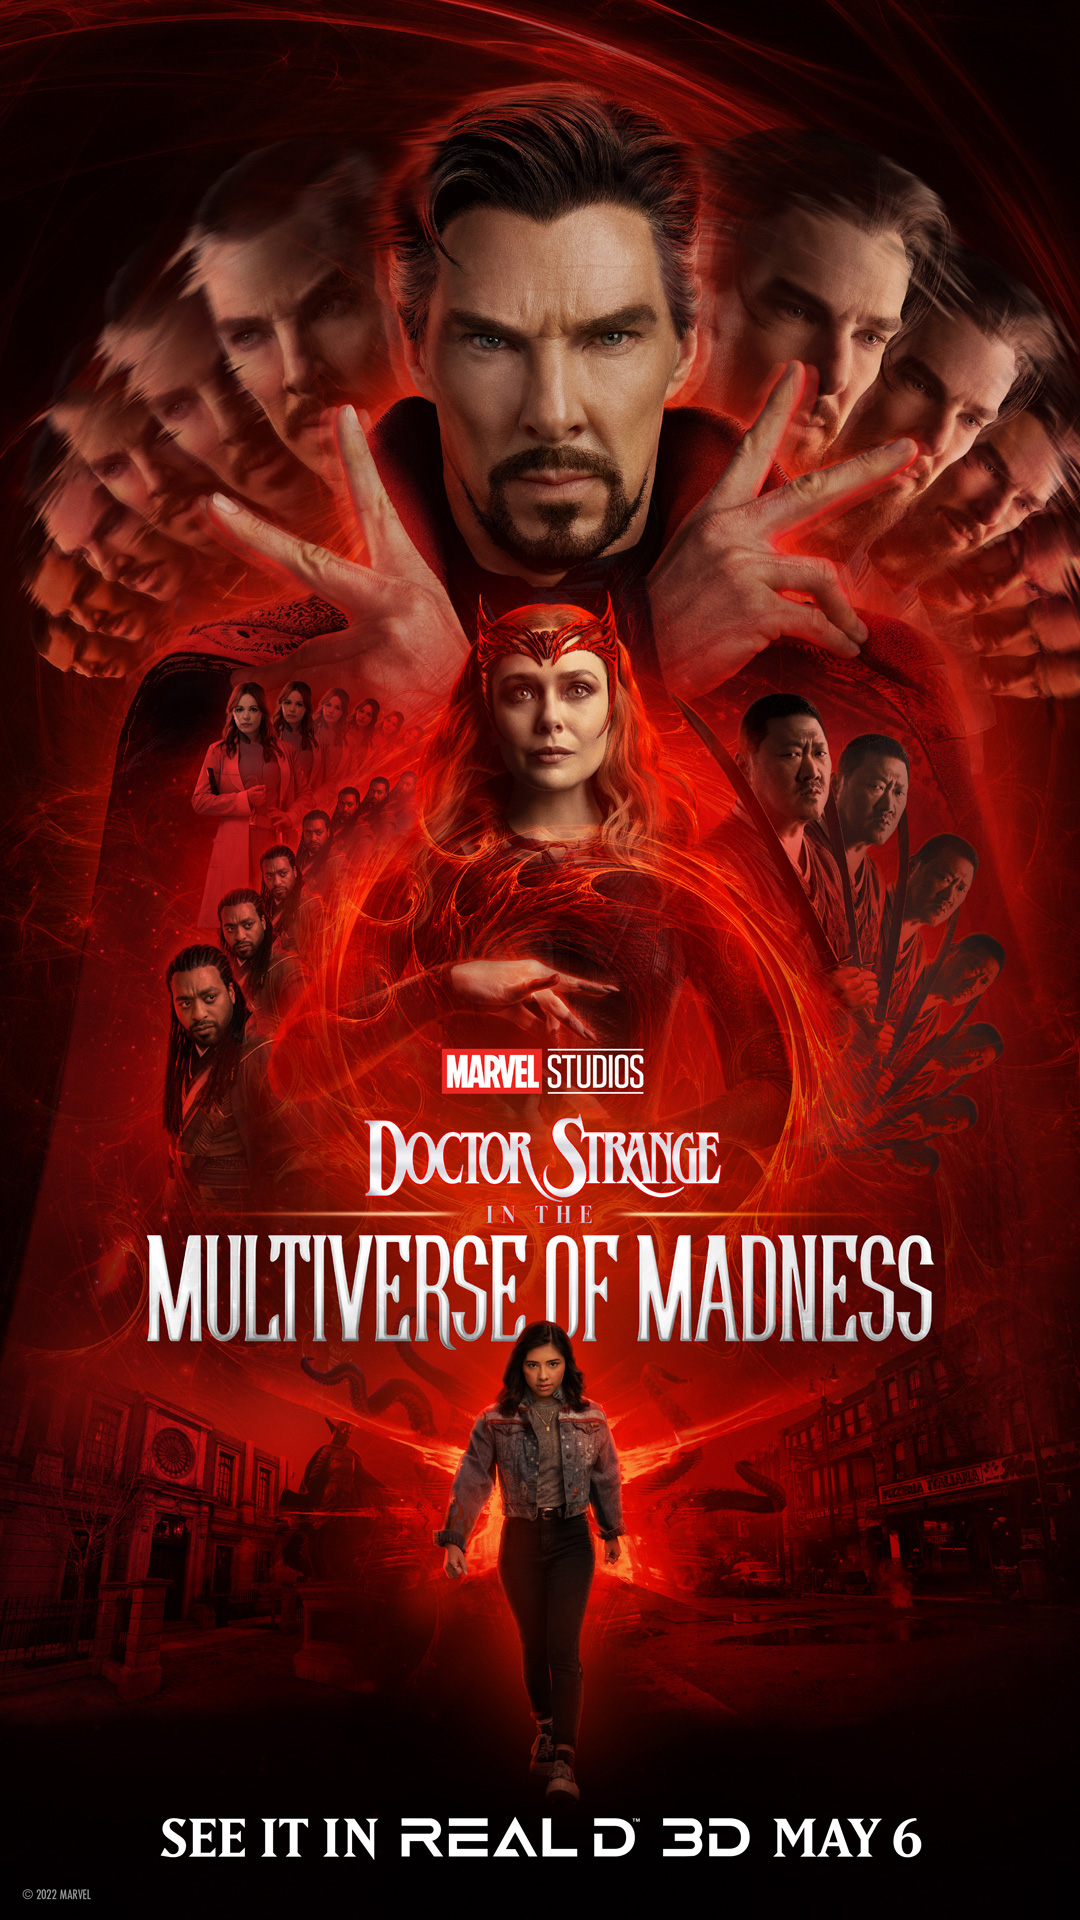 doctor strange multiverso locura poster nuevo 3